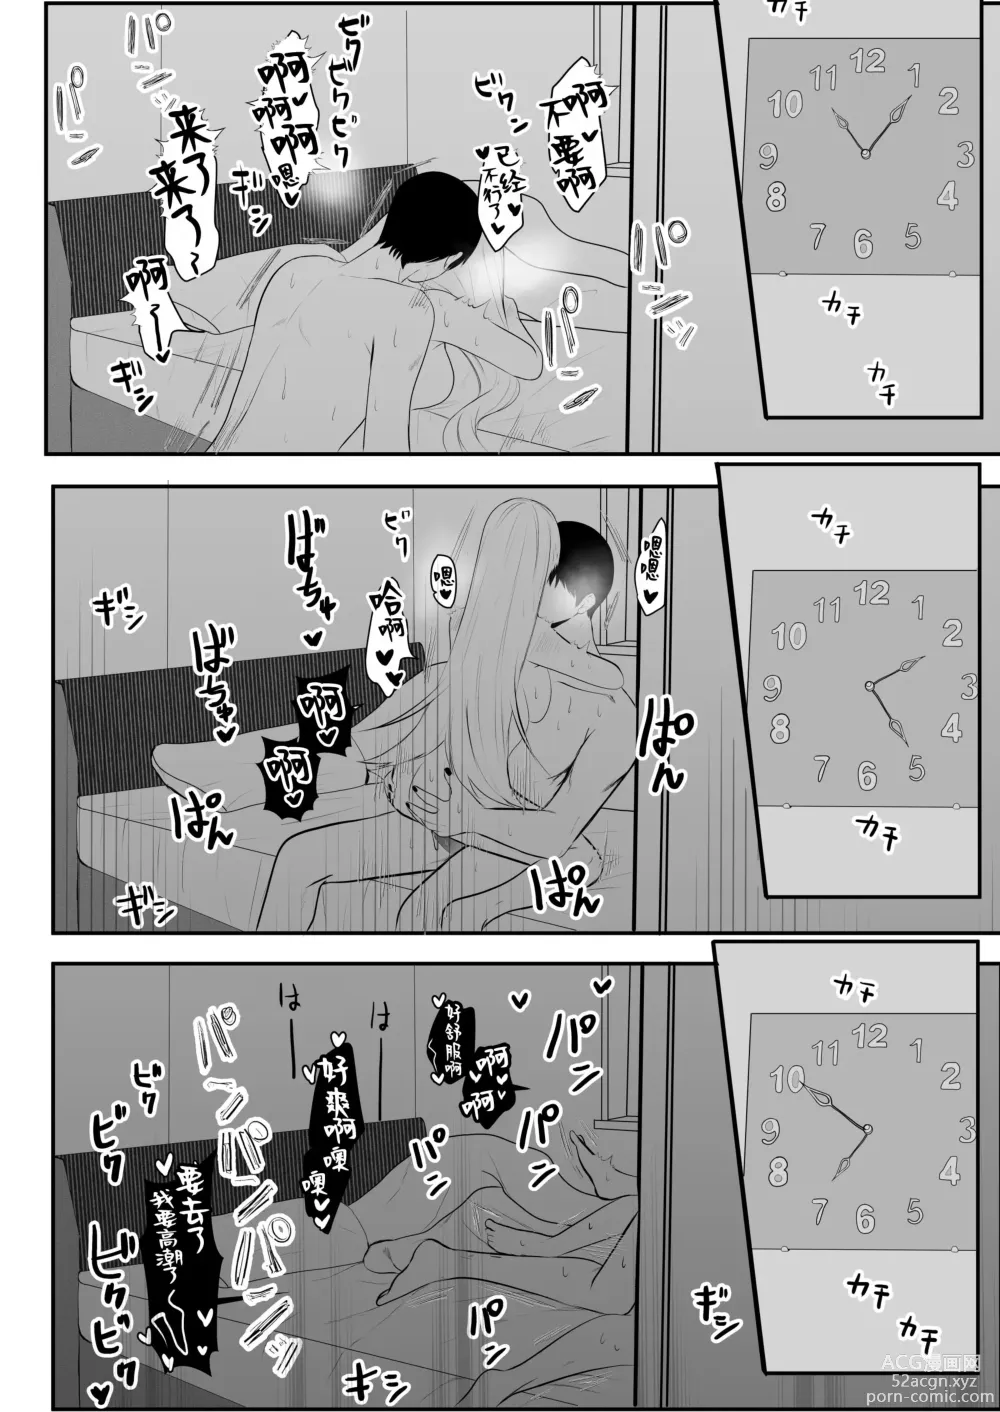 Page 23 of doujinshi 原天才魔法士被敌对死灵法师死缠烂打不放手